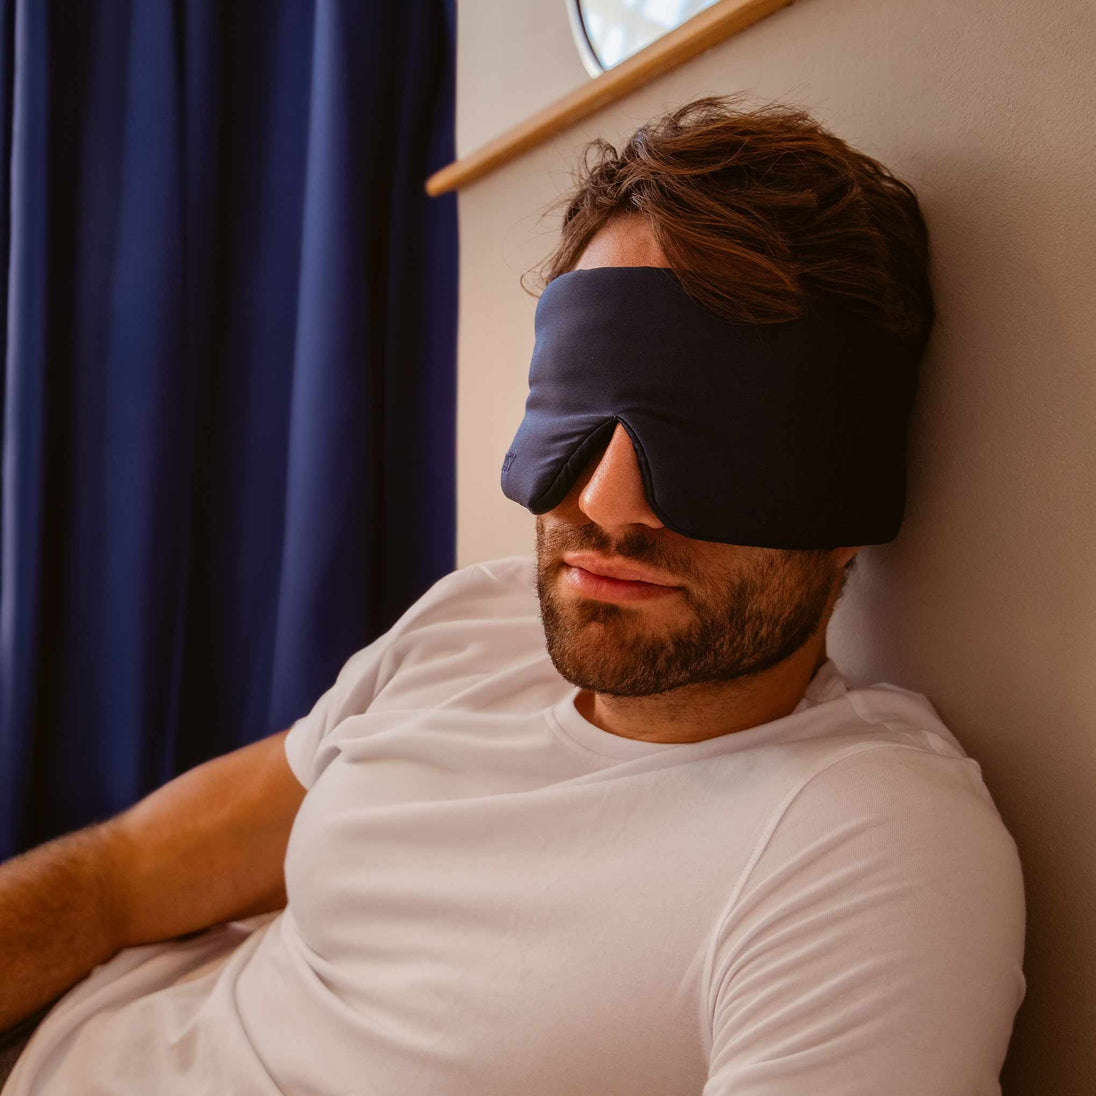 11 Best Sleep Masks - Nighttime Eye Masks for Bed